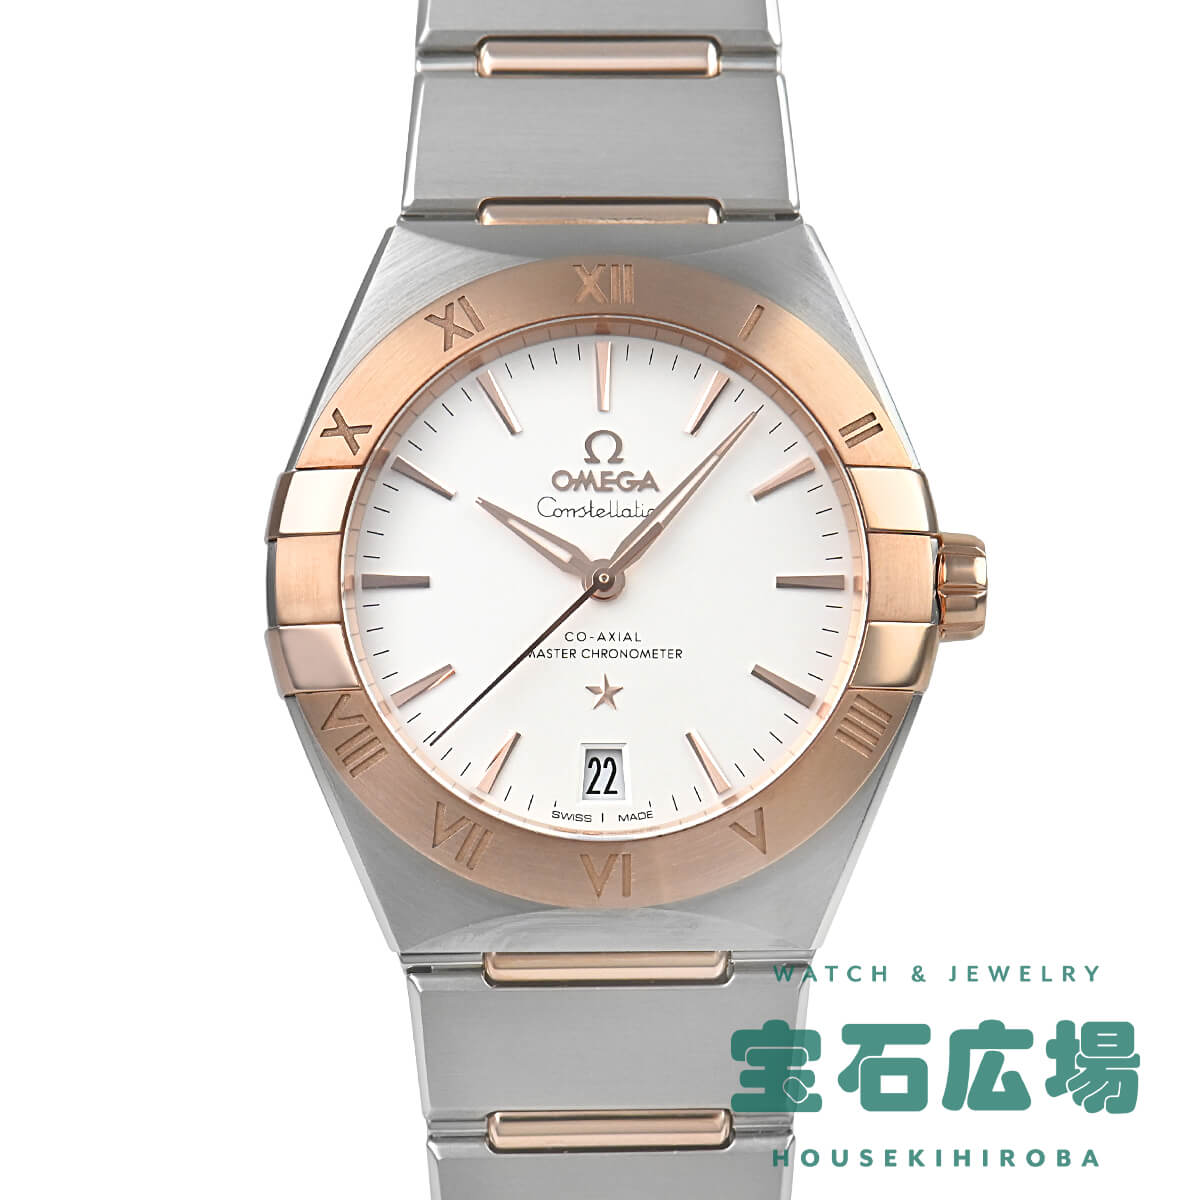 オメガ OMEGA コンステレーション コーアクシャル マスタークロノメーター 131.20.36.20.02.001 新品 メンズ 腕時計